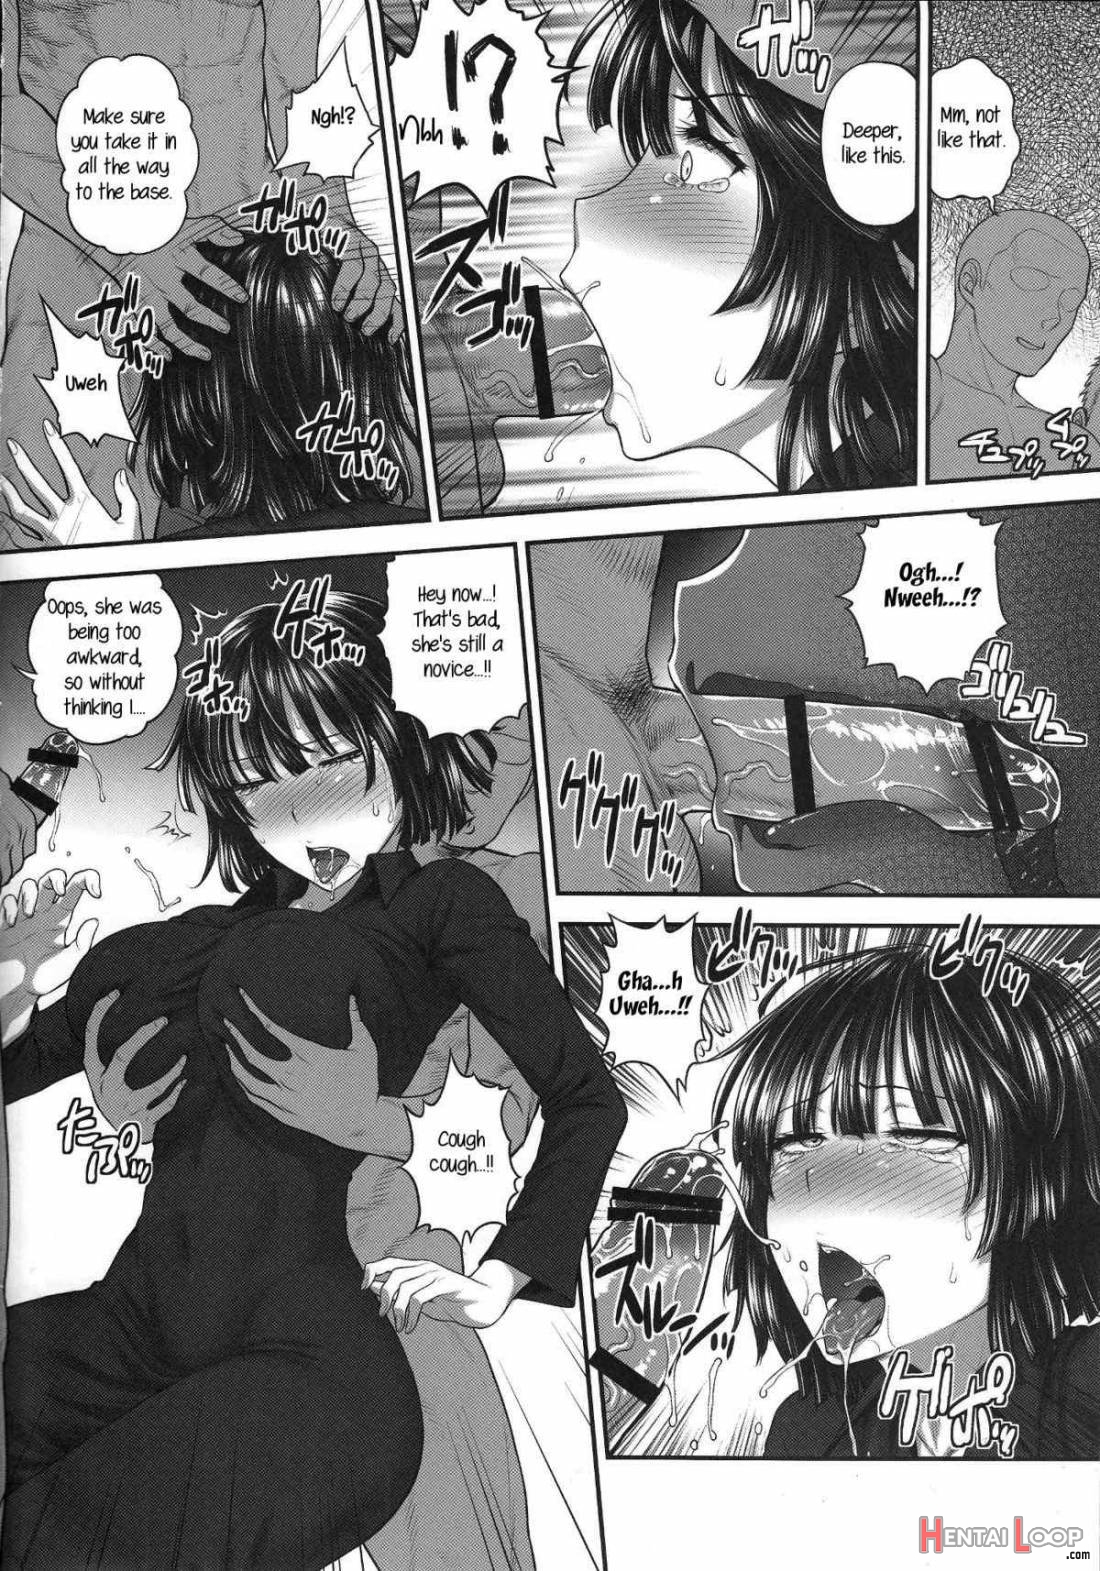 Fubuki Vs 50men page 6